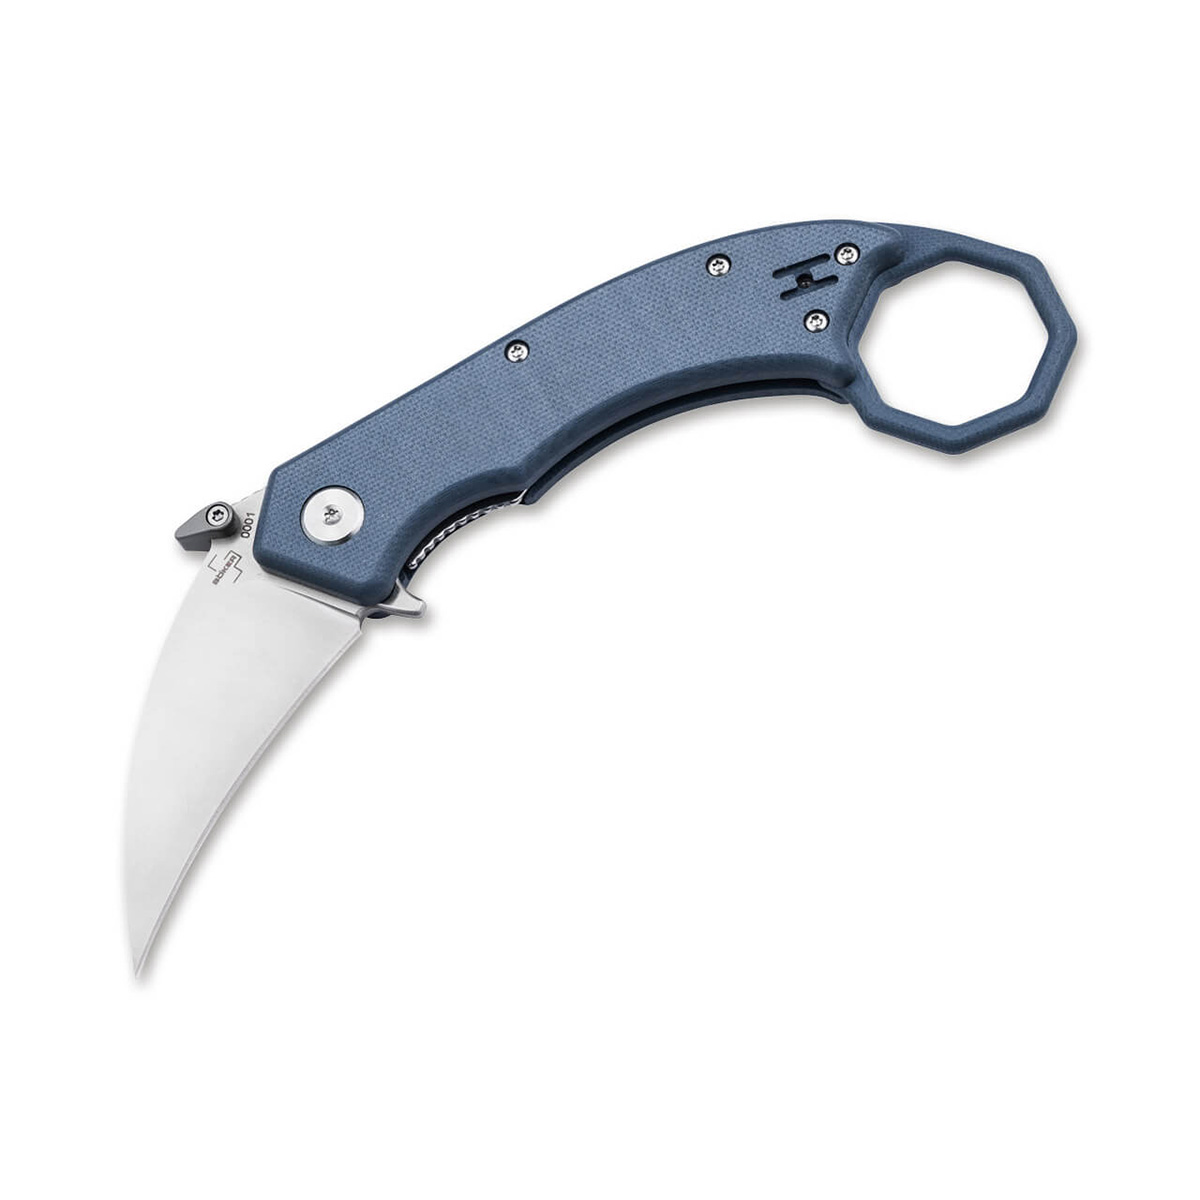 Складной нож Boker HEL Karambit, сталь 154CM, рукоять G10, blue/grey - фото 1